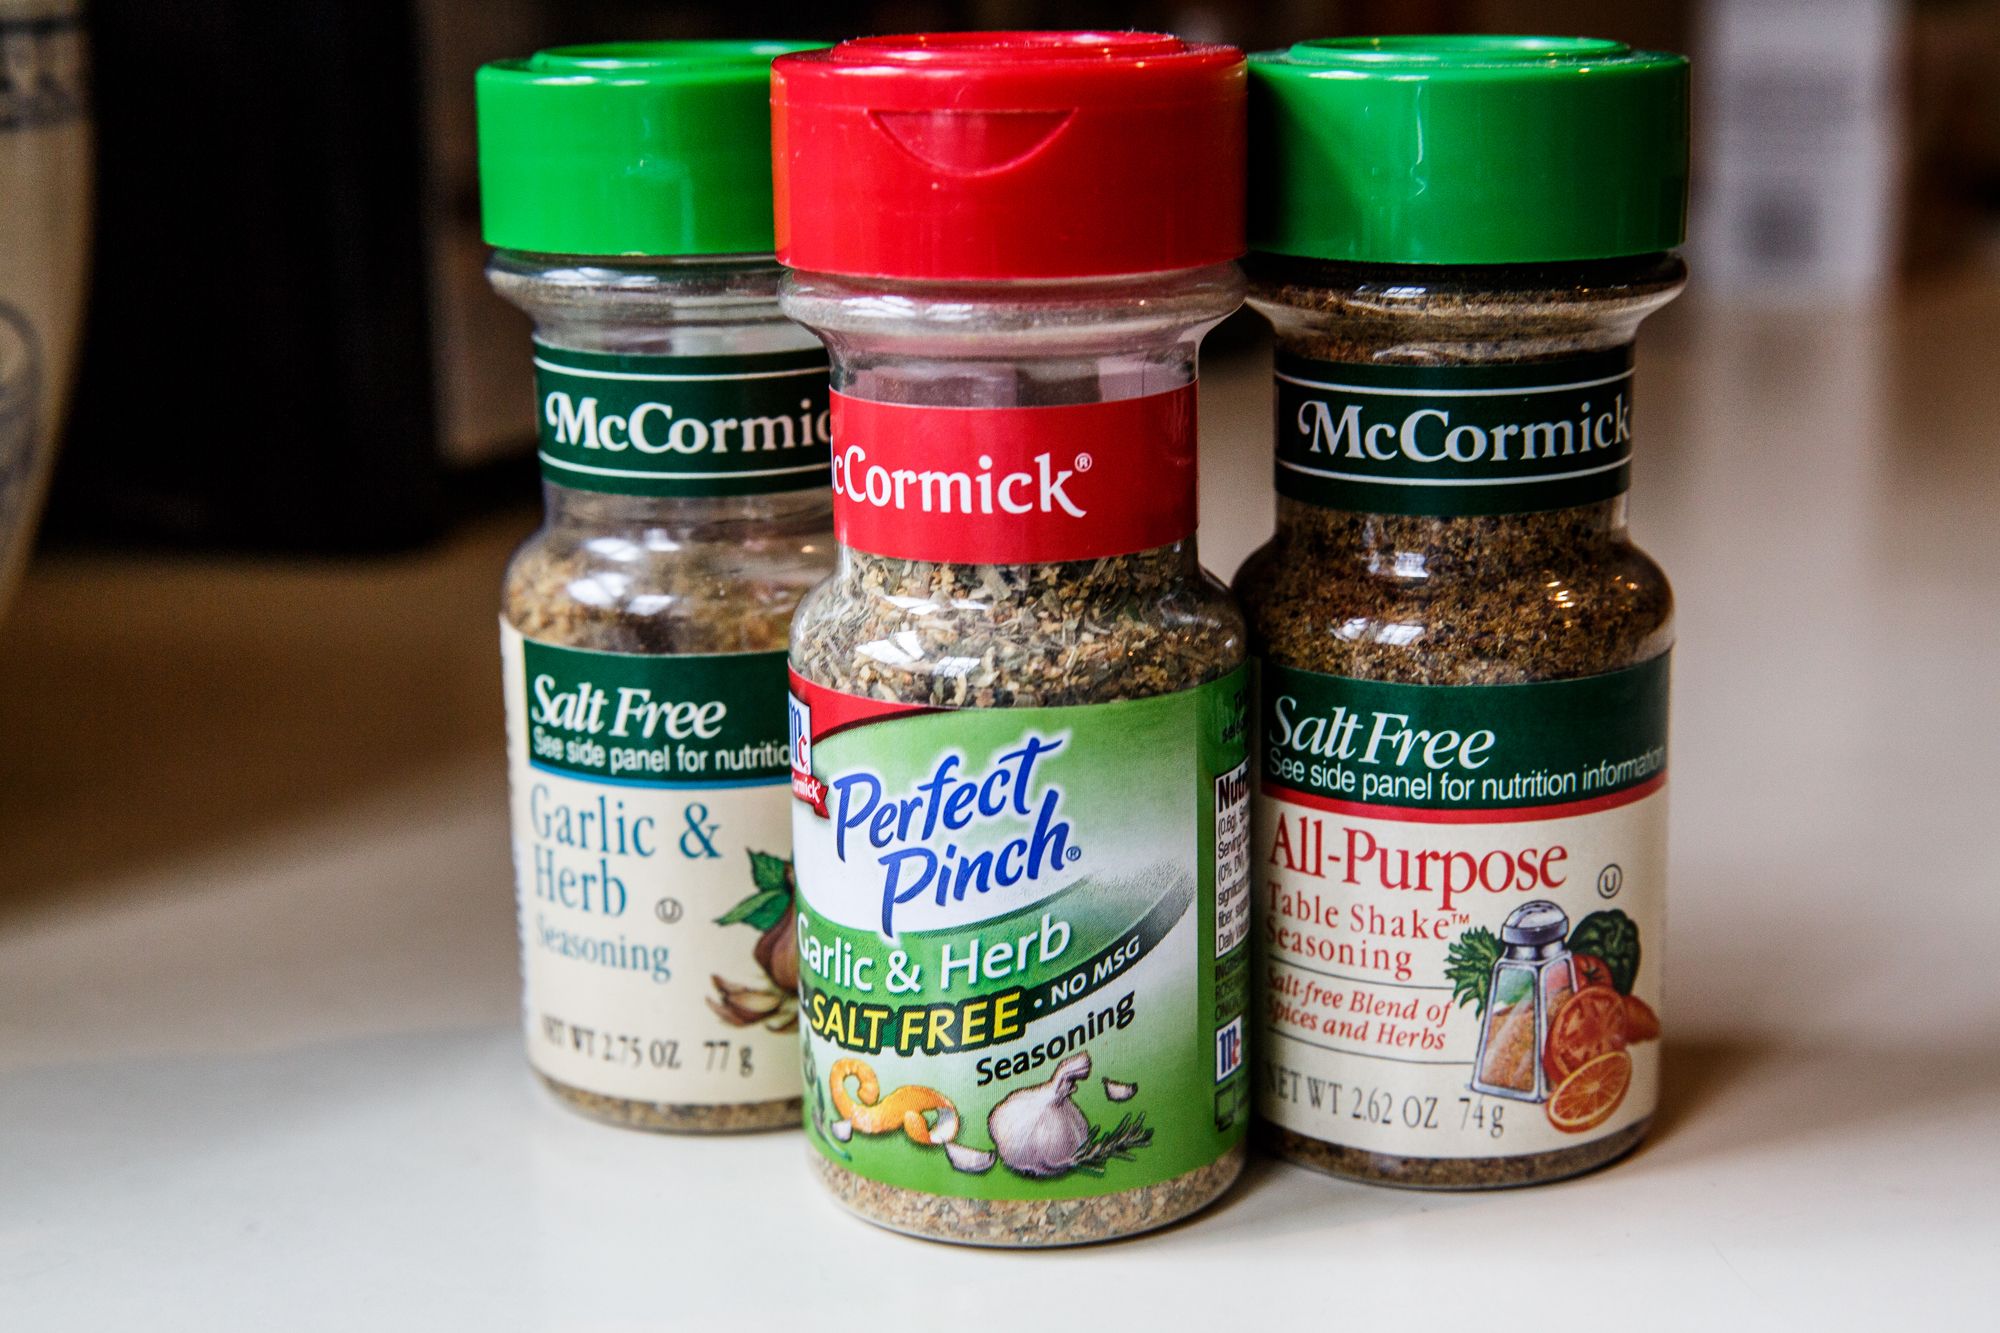 McCormick Perfect Pinch Garlic & Herb Salt Free Seasoning, 2.75 oz